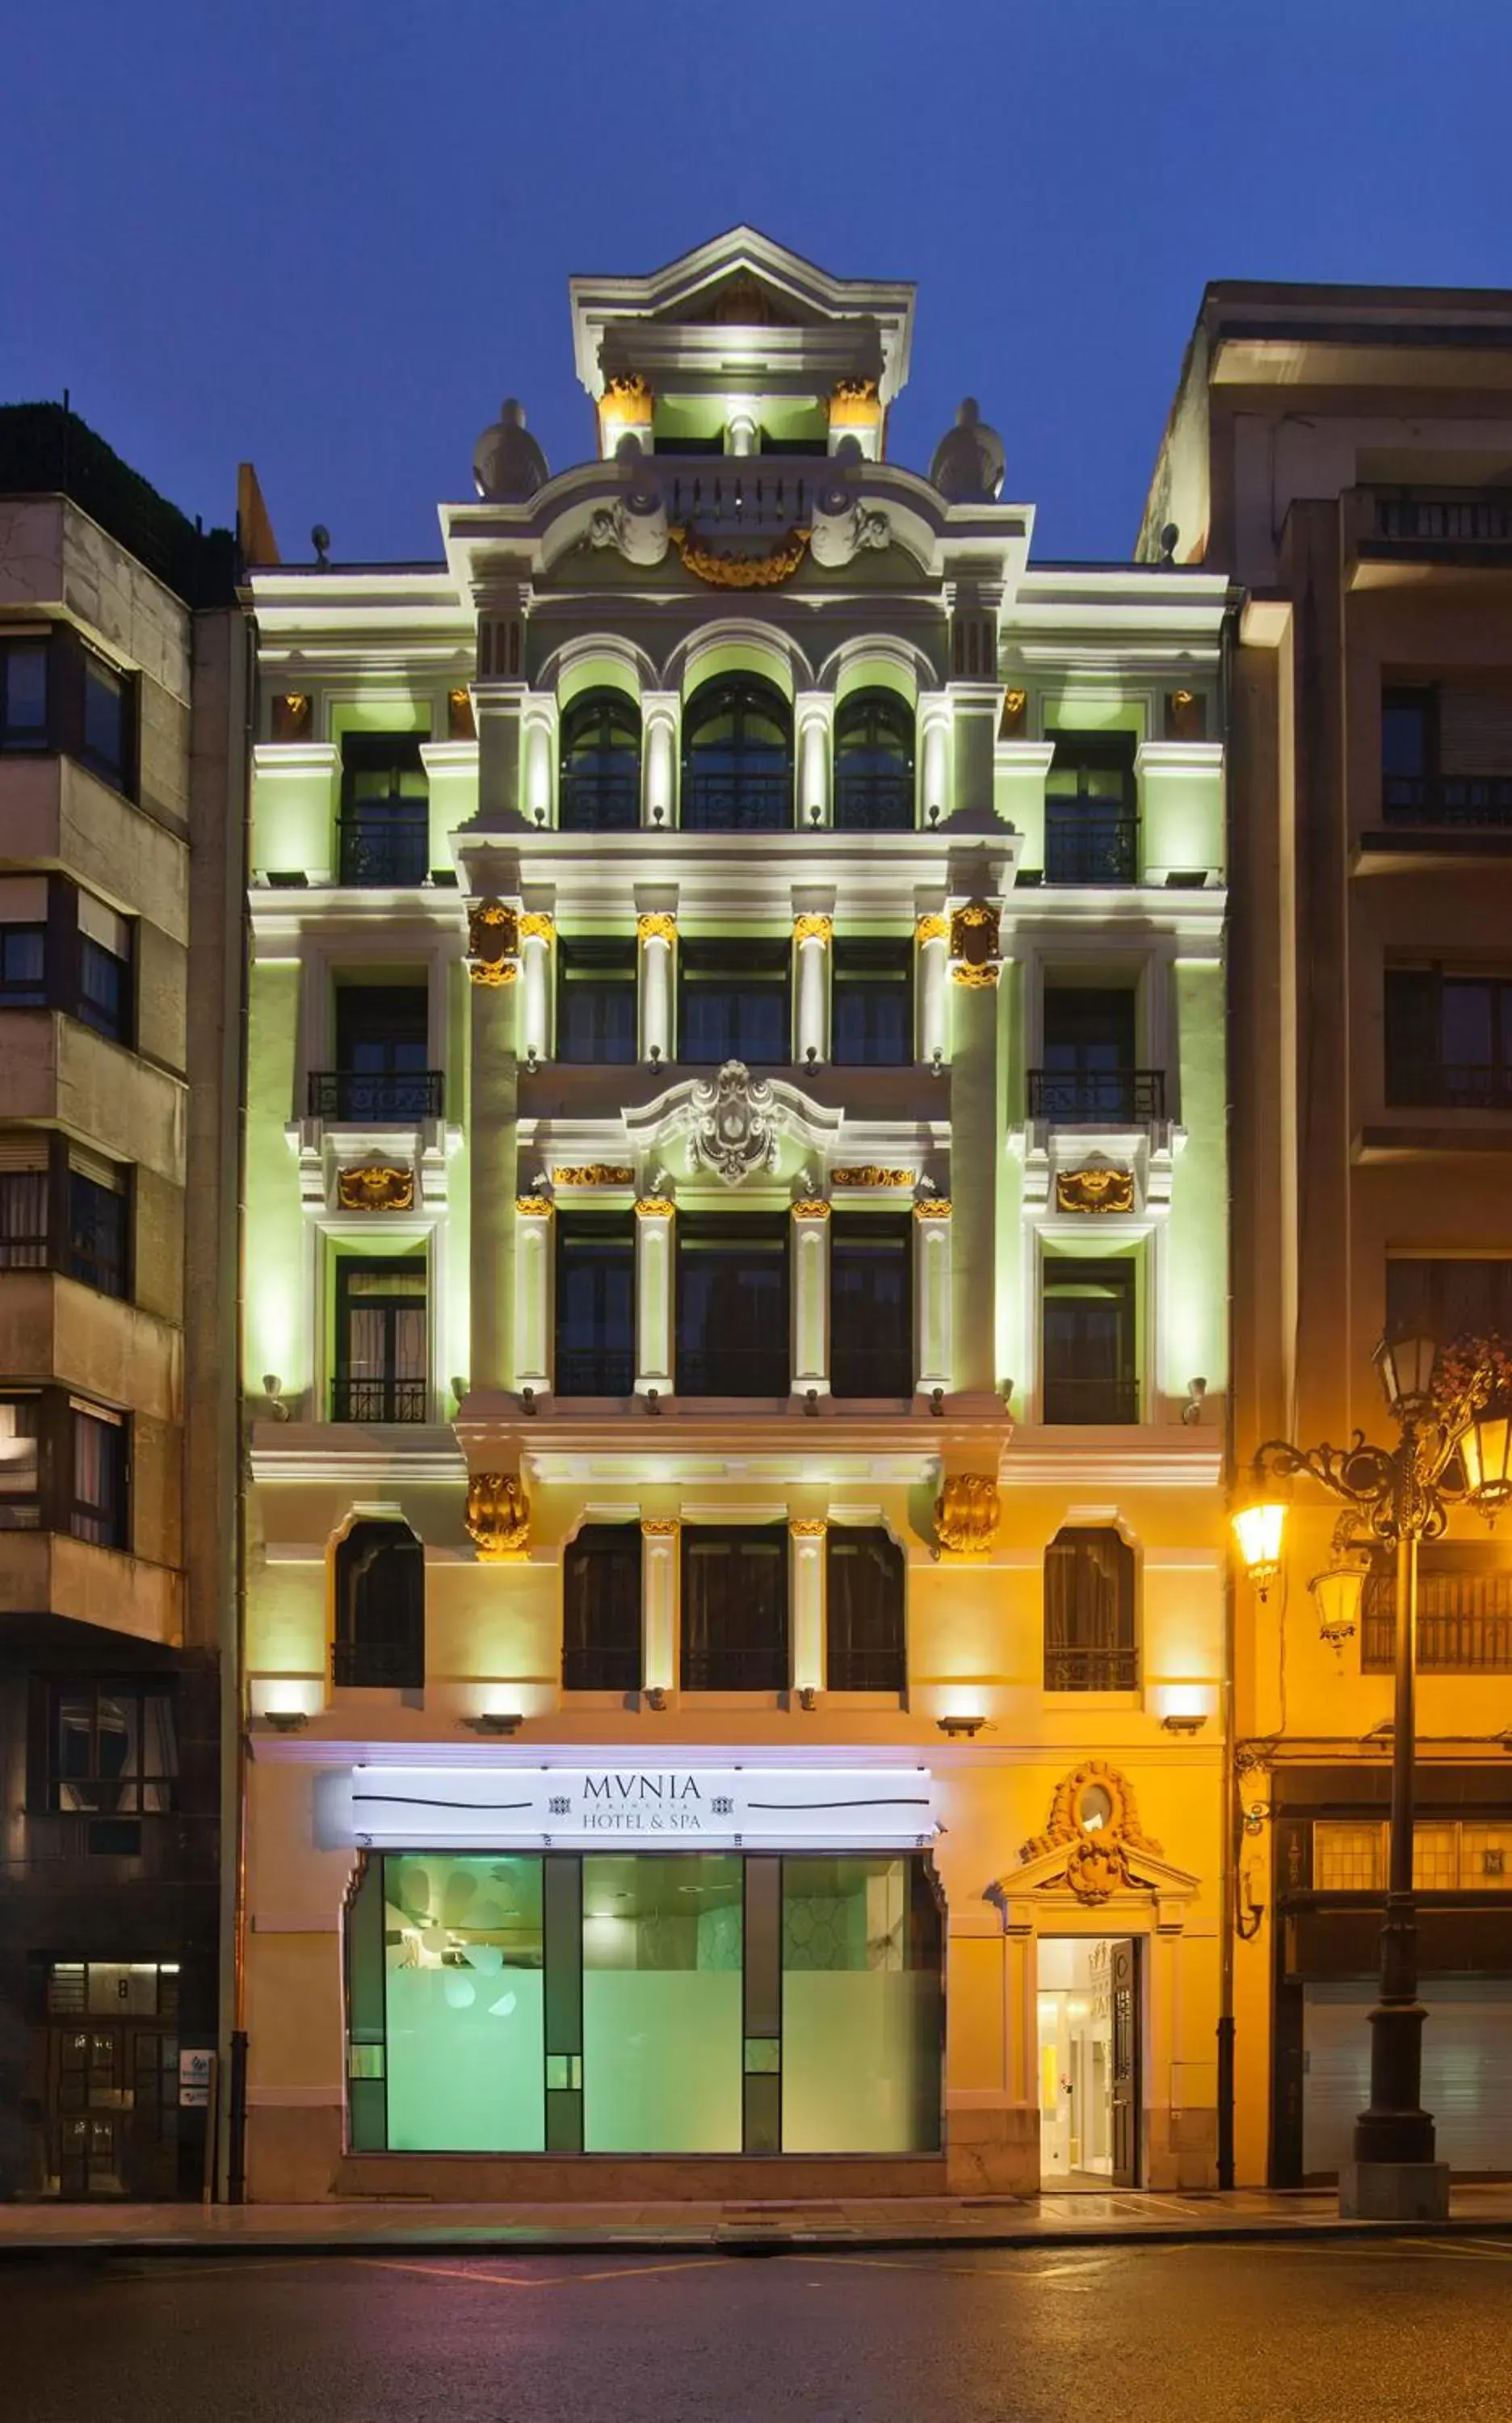 Facade/entrance, Property Building in Hotel & Spa Princesa Munia